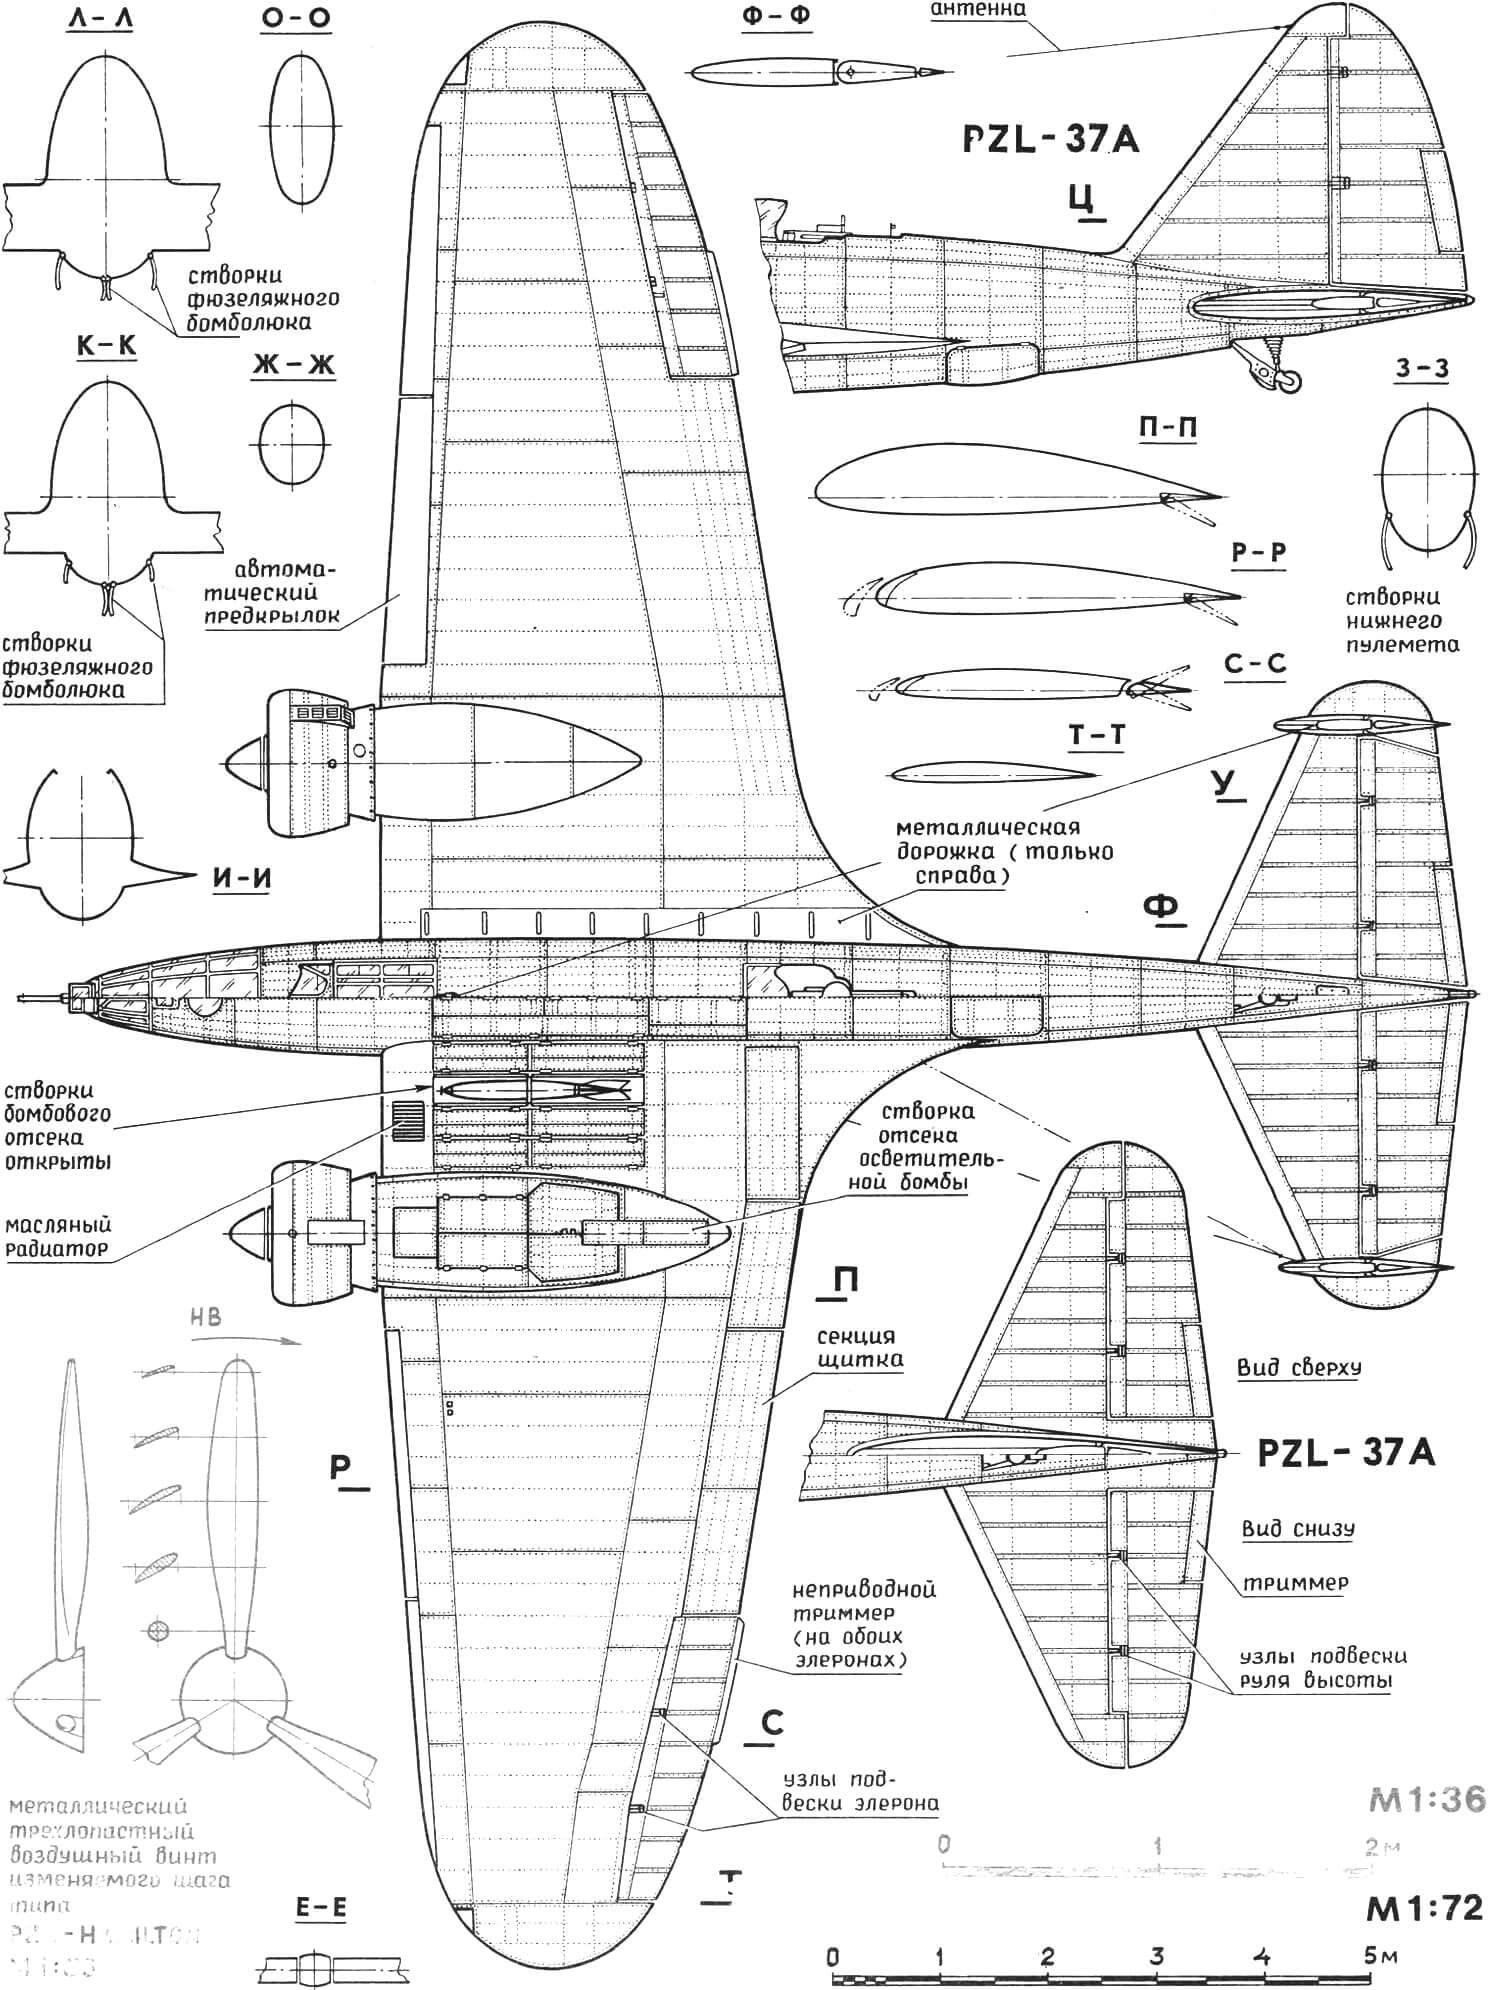 PZL-37A